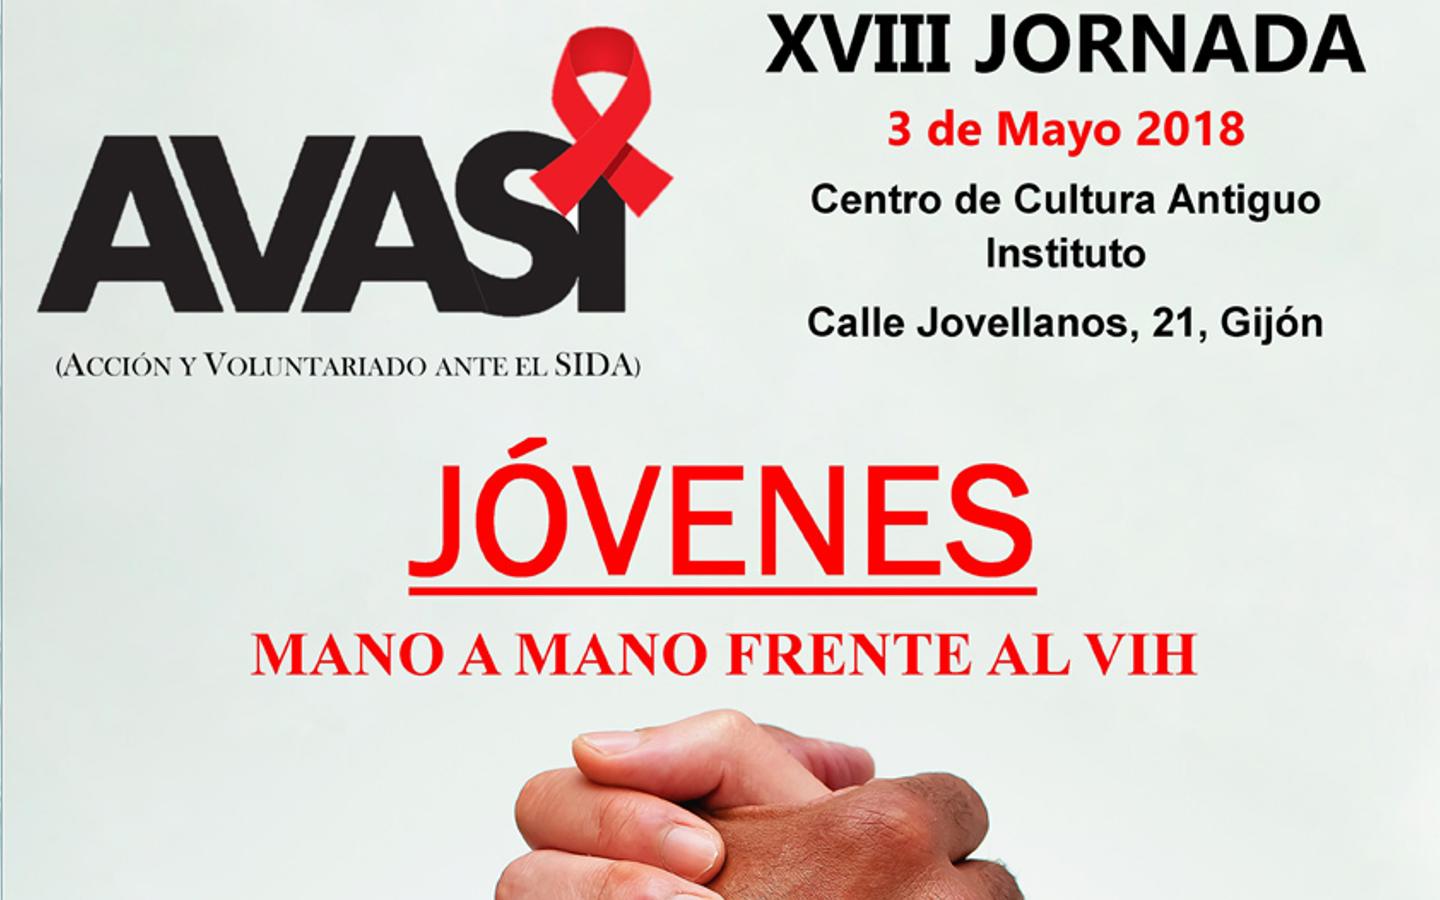 AVASI 2018 Acción y Voluntariado Ante el SIDA